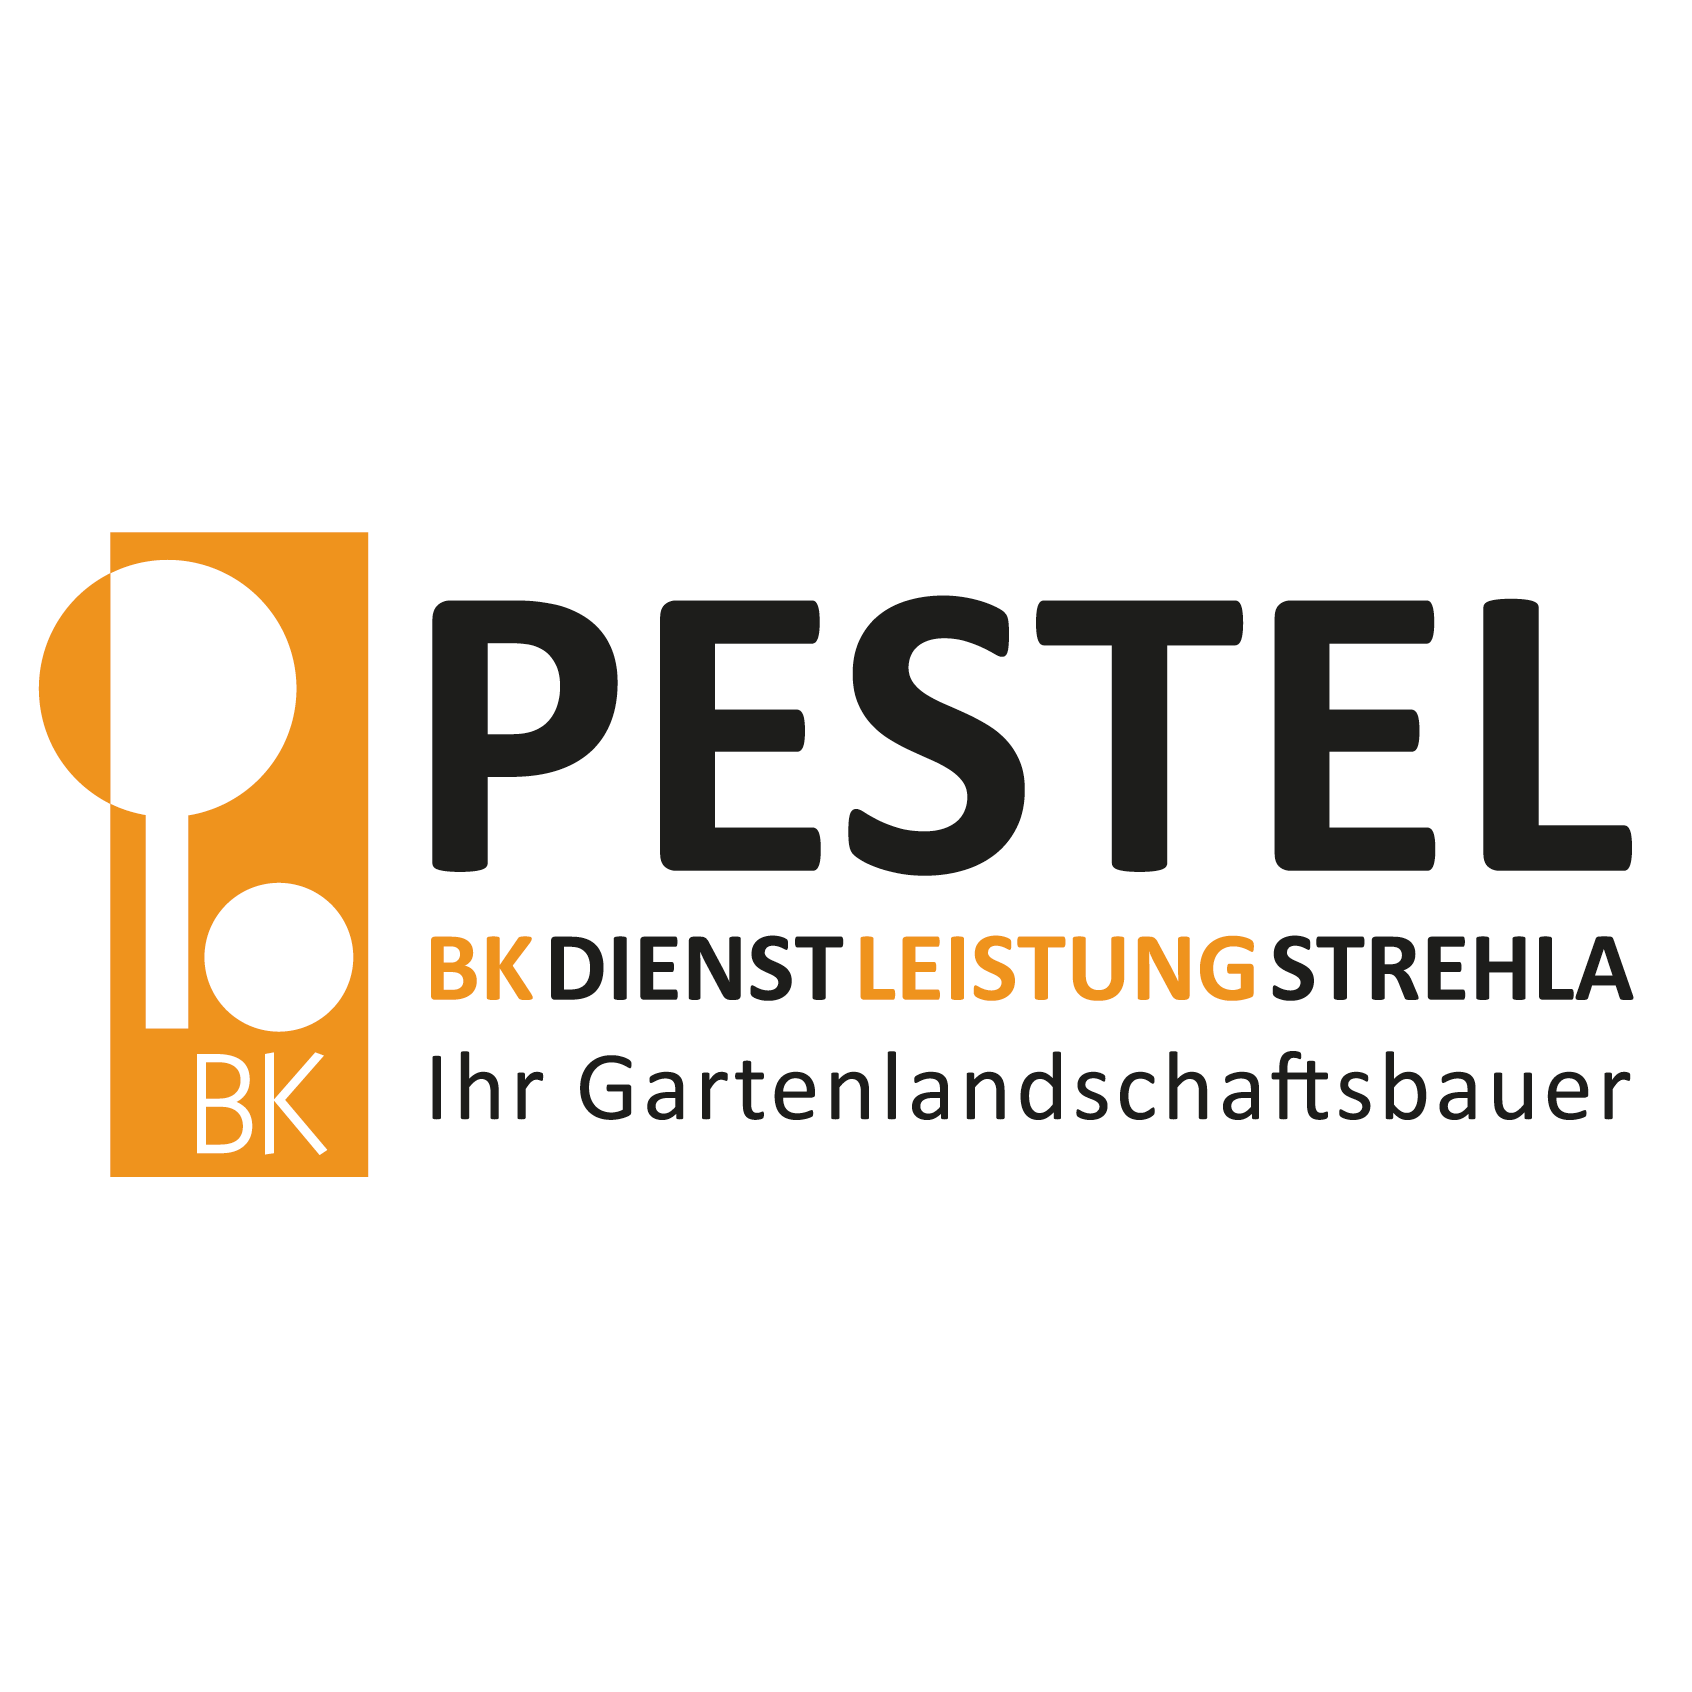 BK Dienstleistung GmbH Strehla in Strehla - Logo